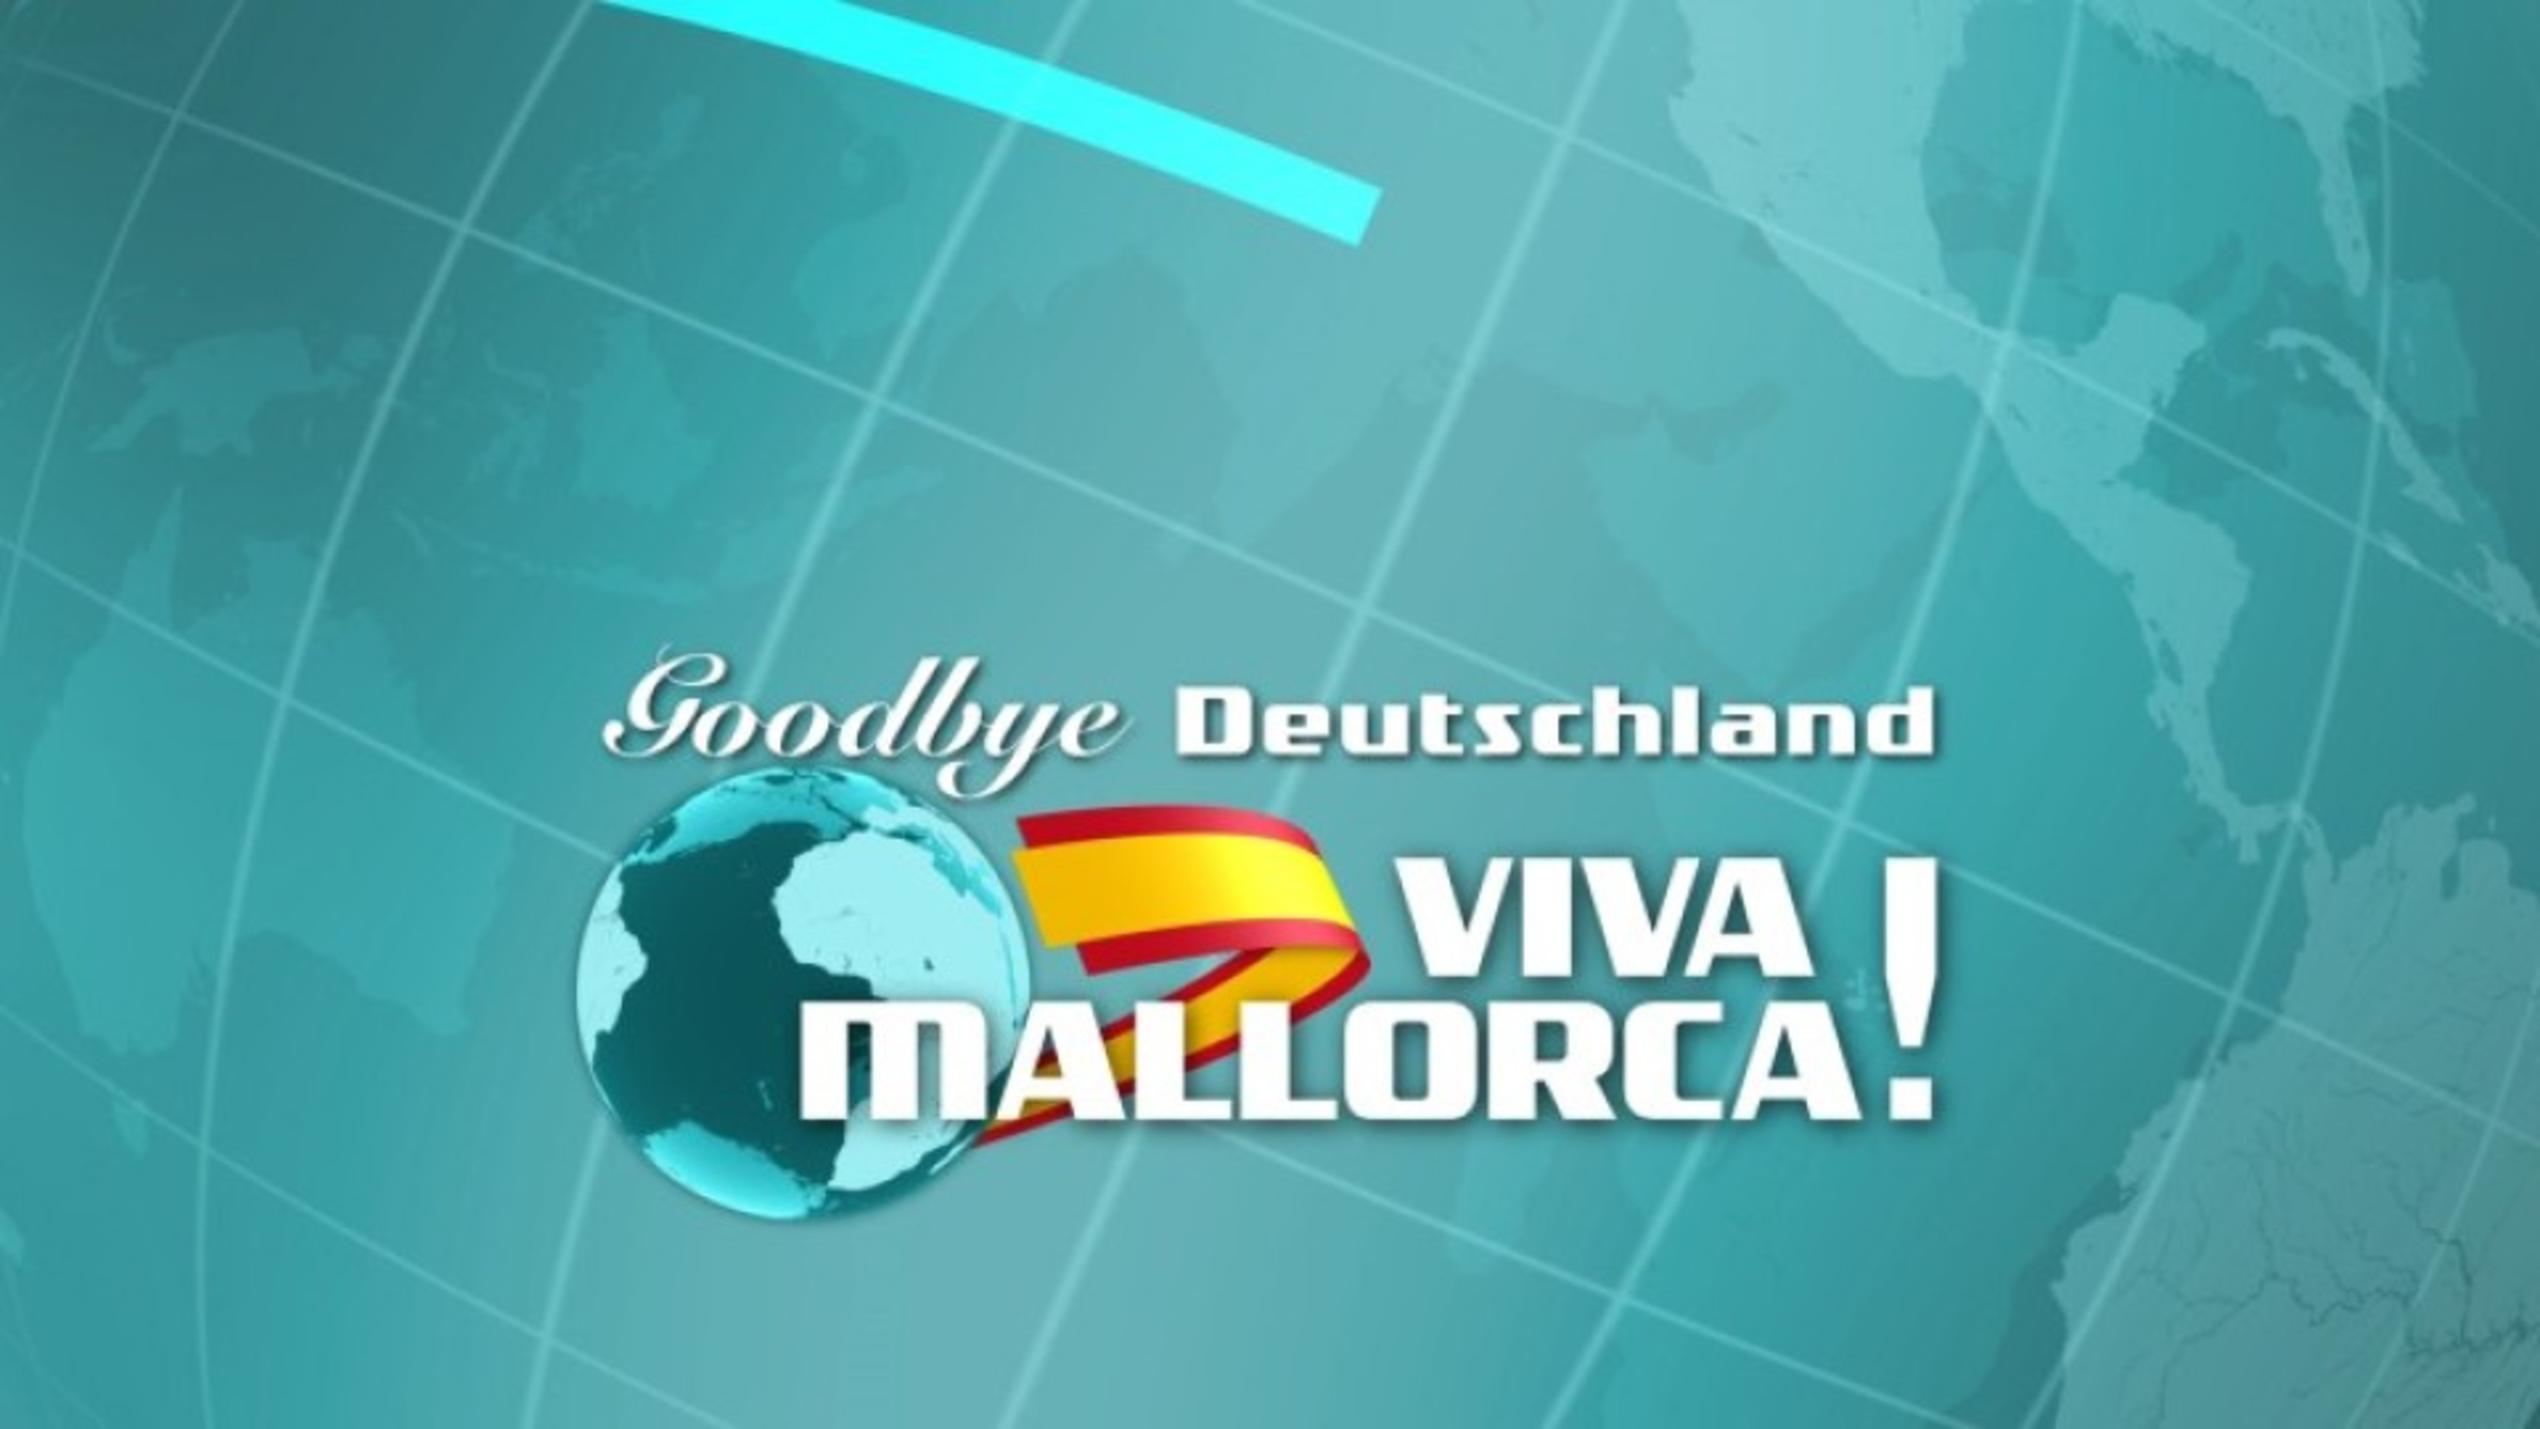 "Goodbye Deutschland! Viva Mallorca!"